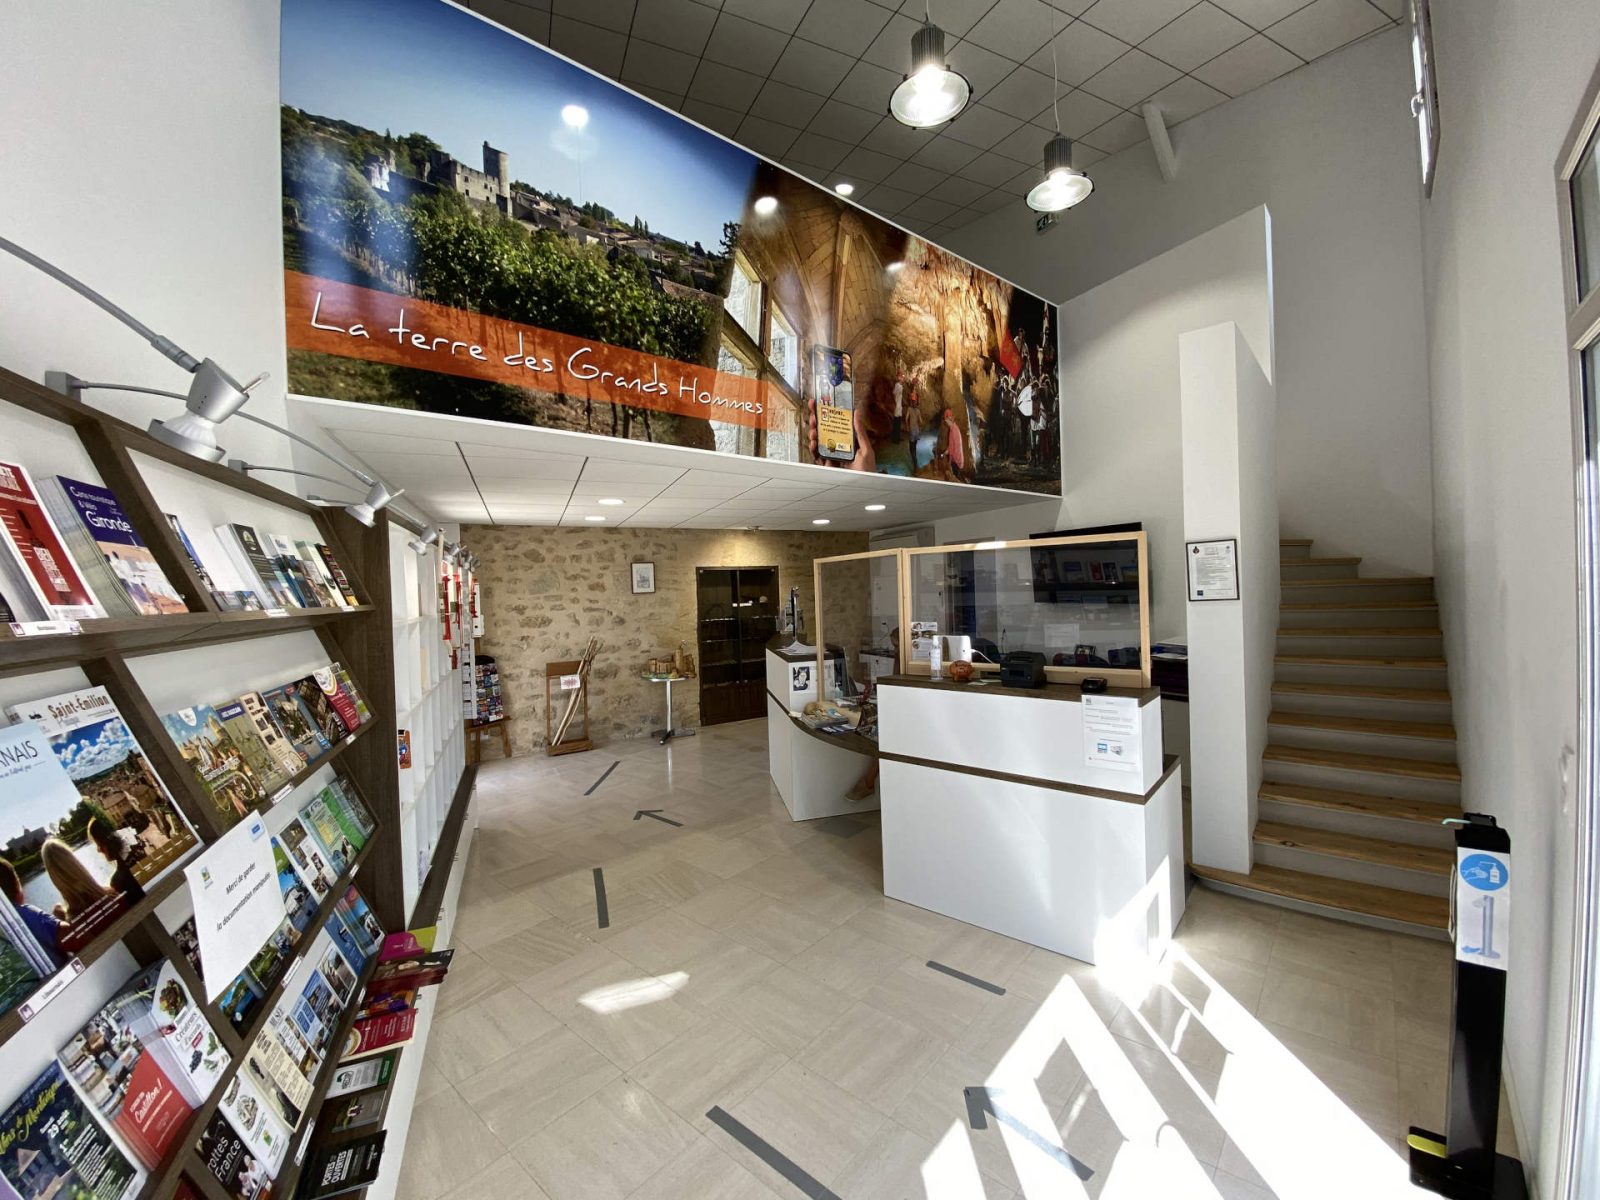 Bureau d’Information Touristique de Rauzan – Office de Tourisme Castillon-Pujols